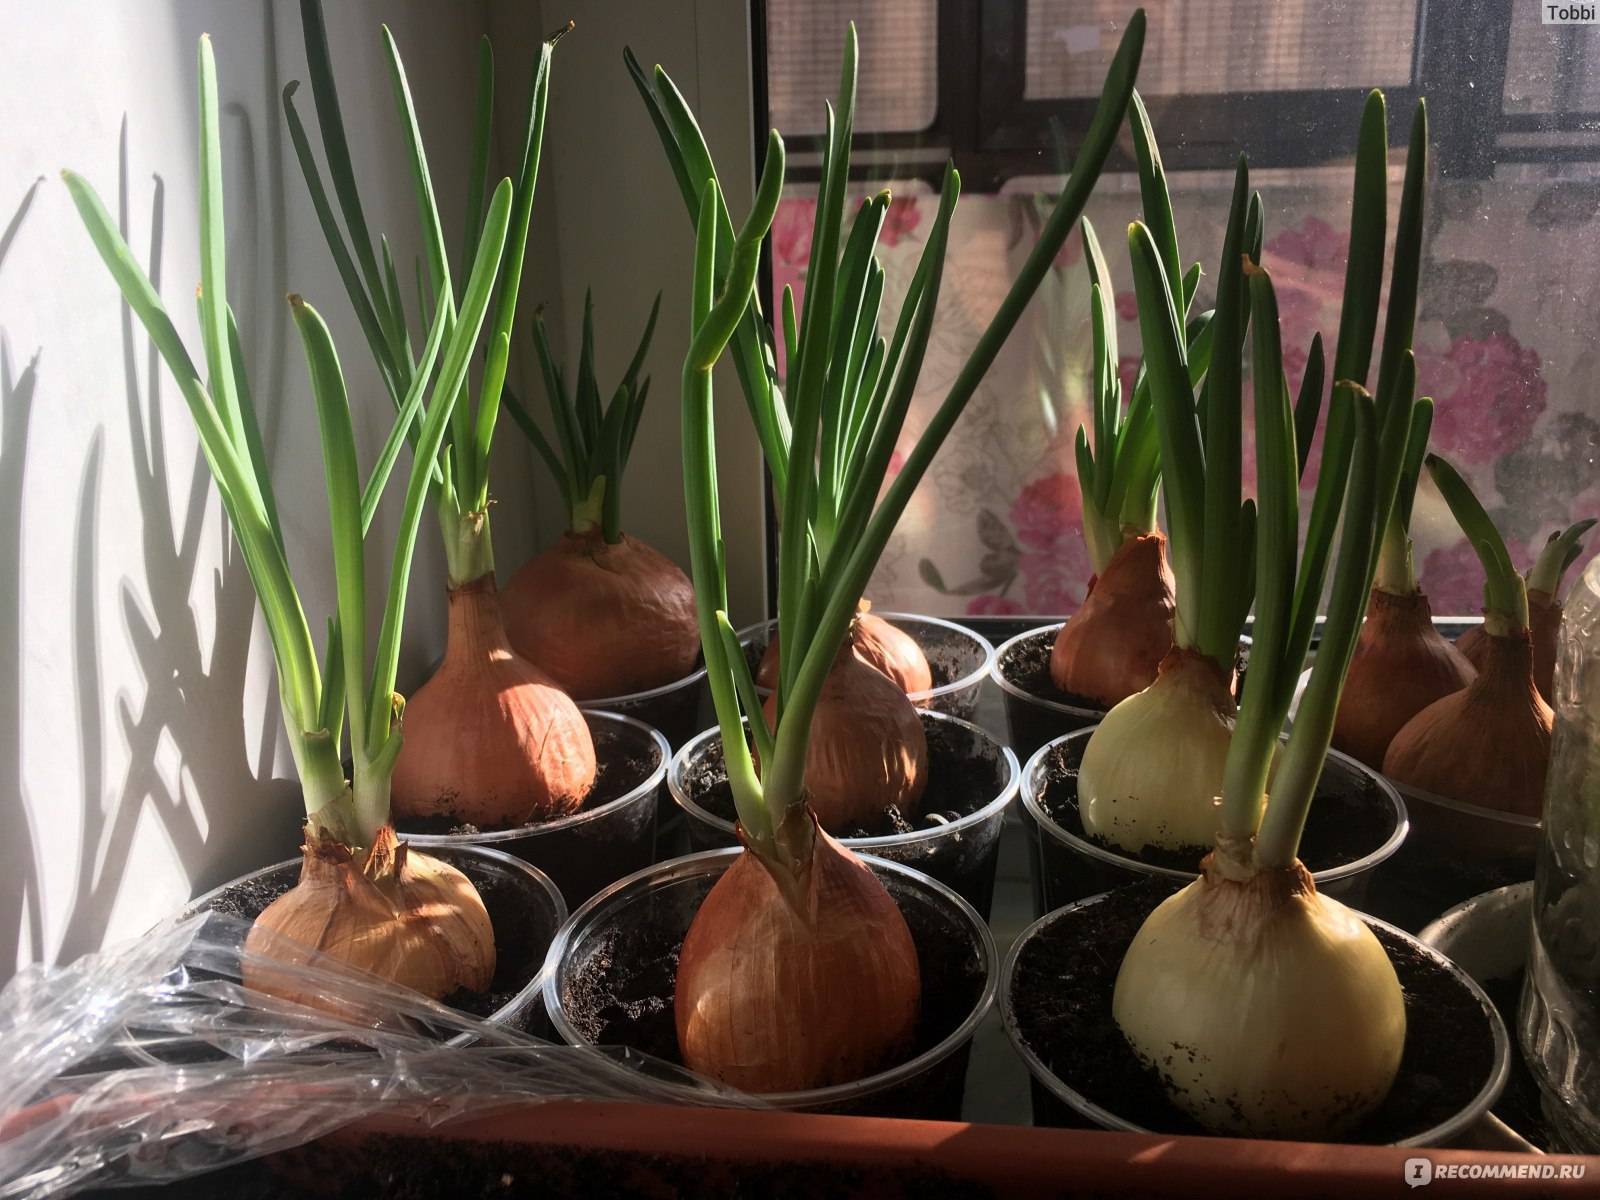 Выращивание лука в домашних условиях – простые и действенные методы